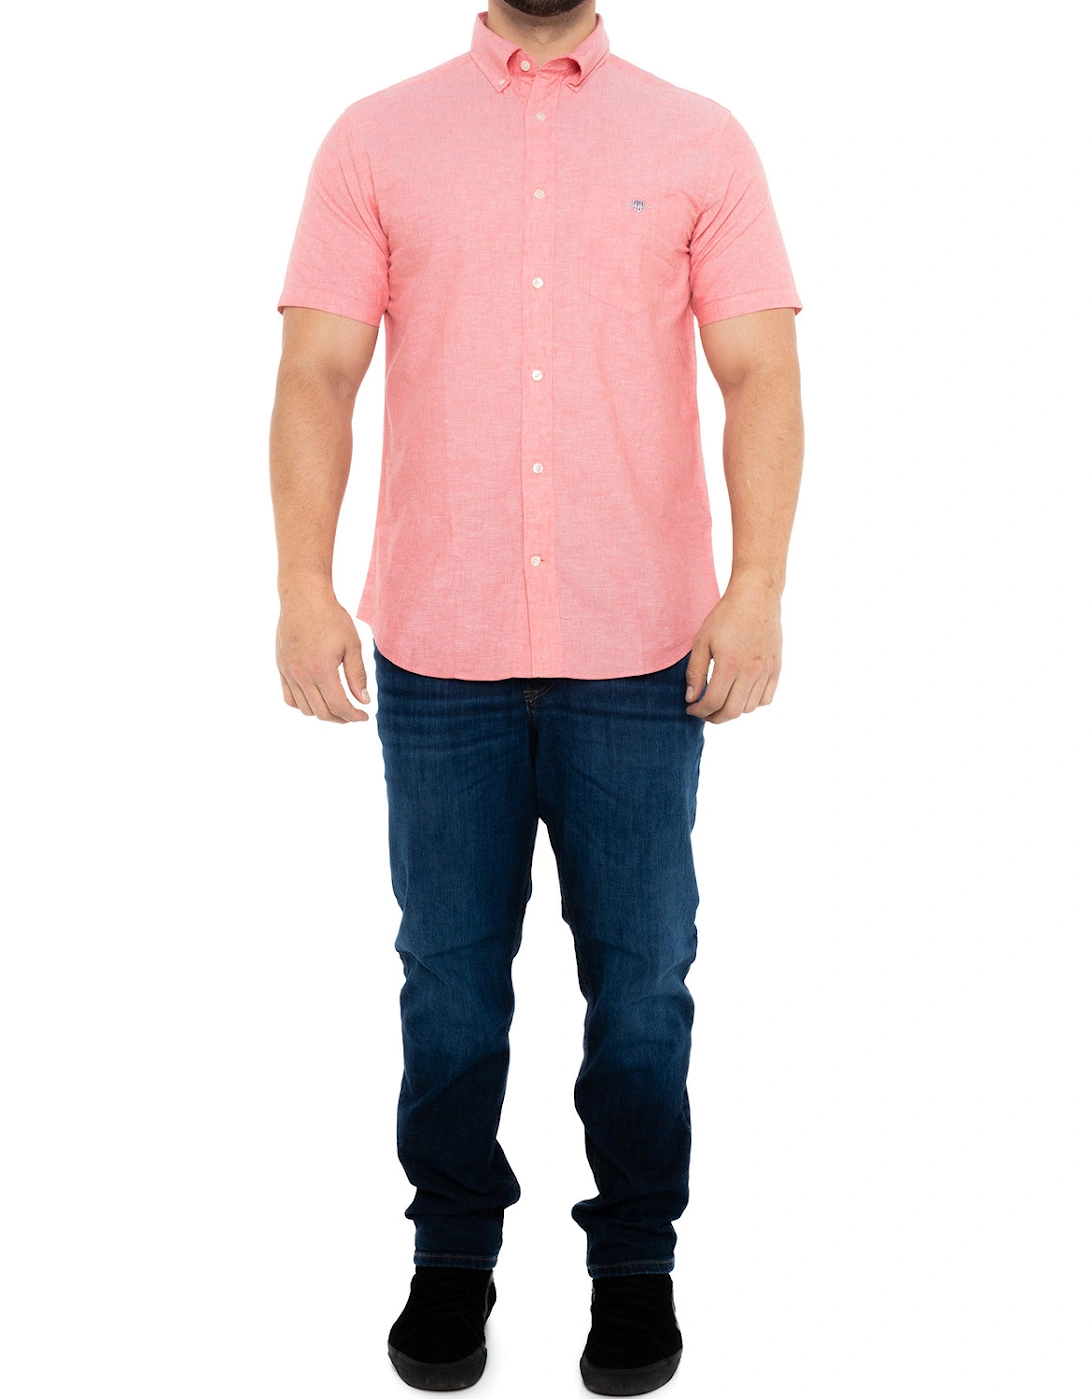 Mens Cotton & Linen Short Sleeve Shirt (Pink)